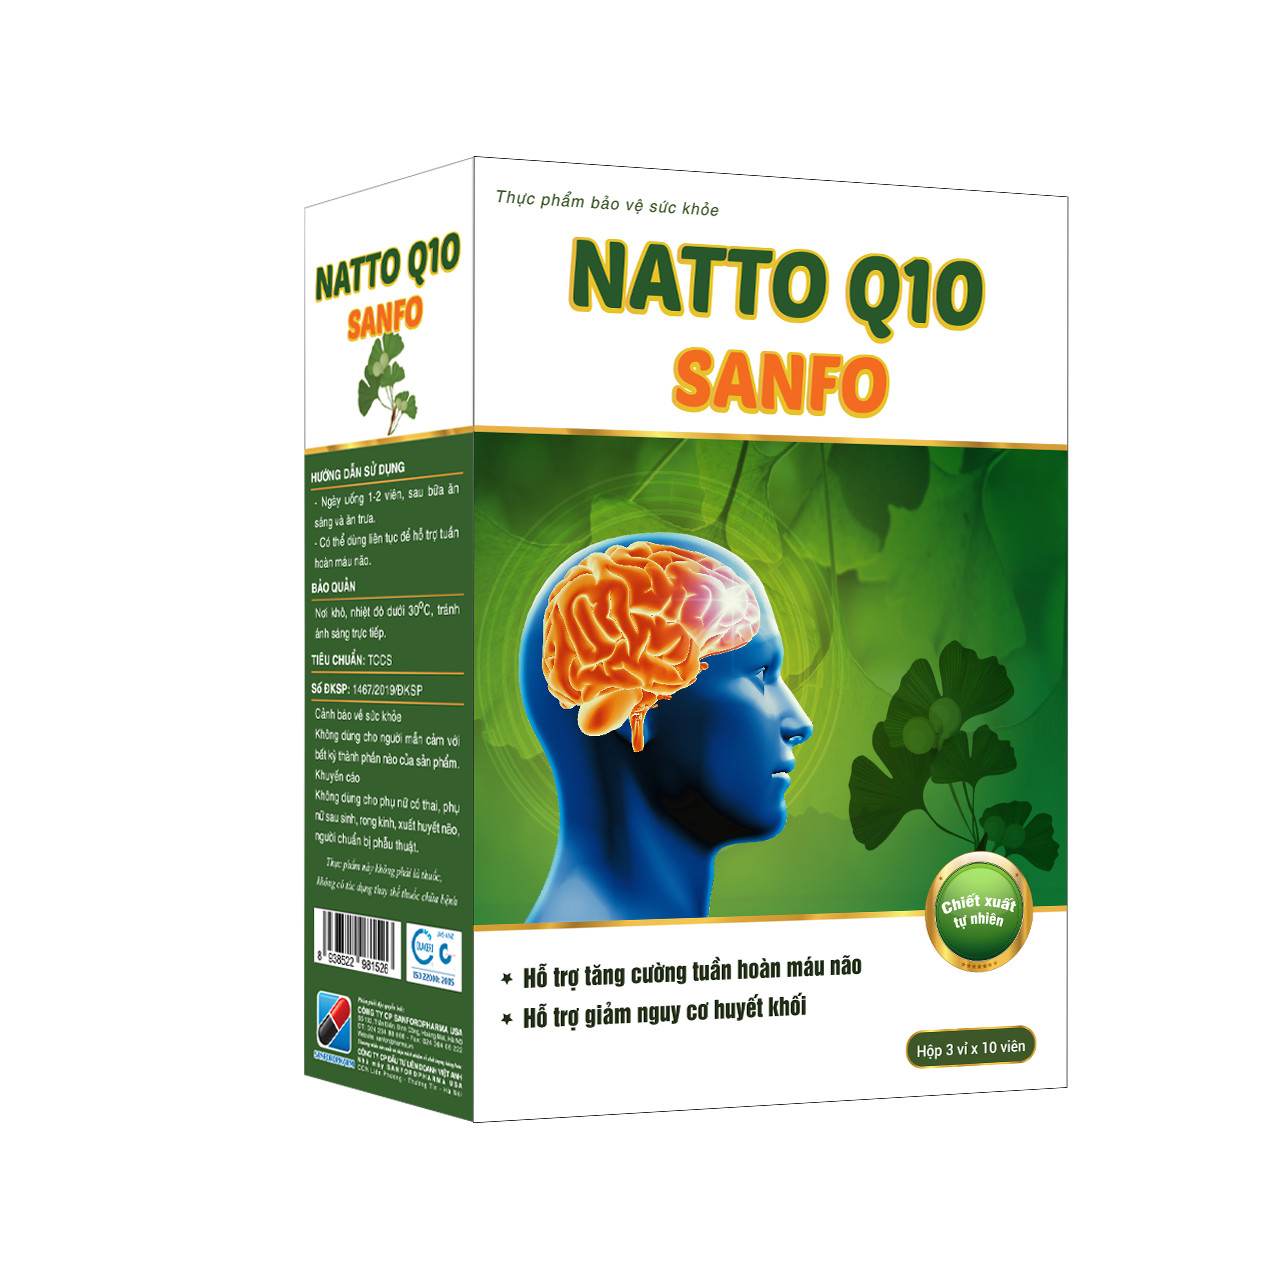 Natto Q10 Sanfo - tăng cường tuần hoàn máu não, giảm đau đầu, hoa mắt, chóng mặt hộp 3 vỉ x 10 viên